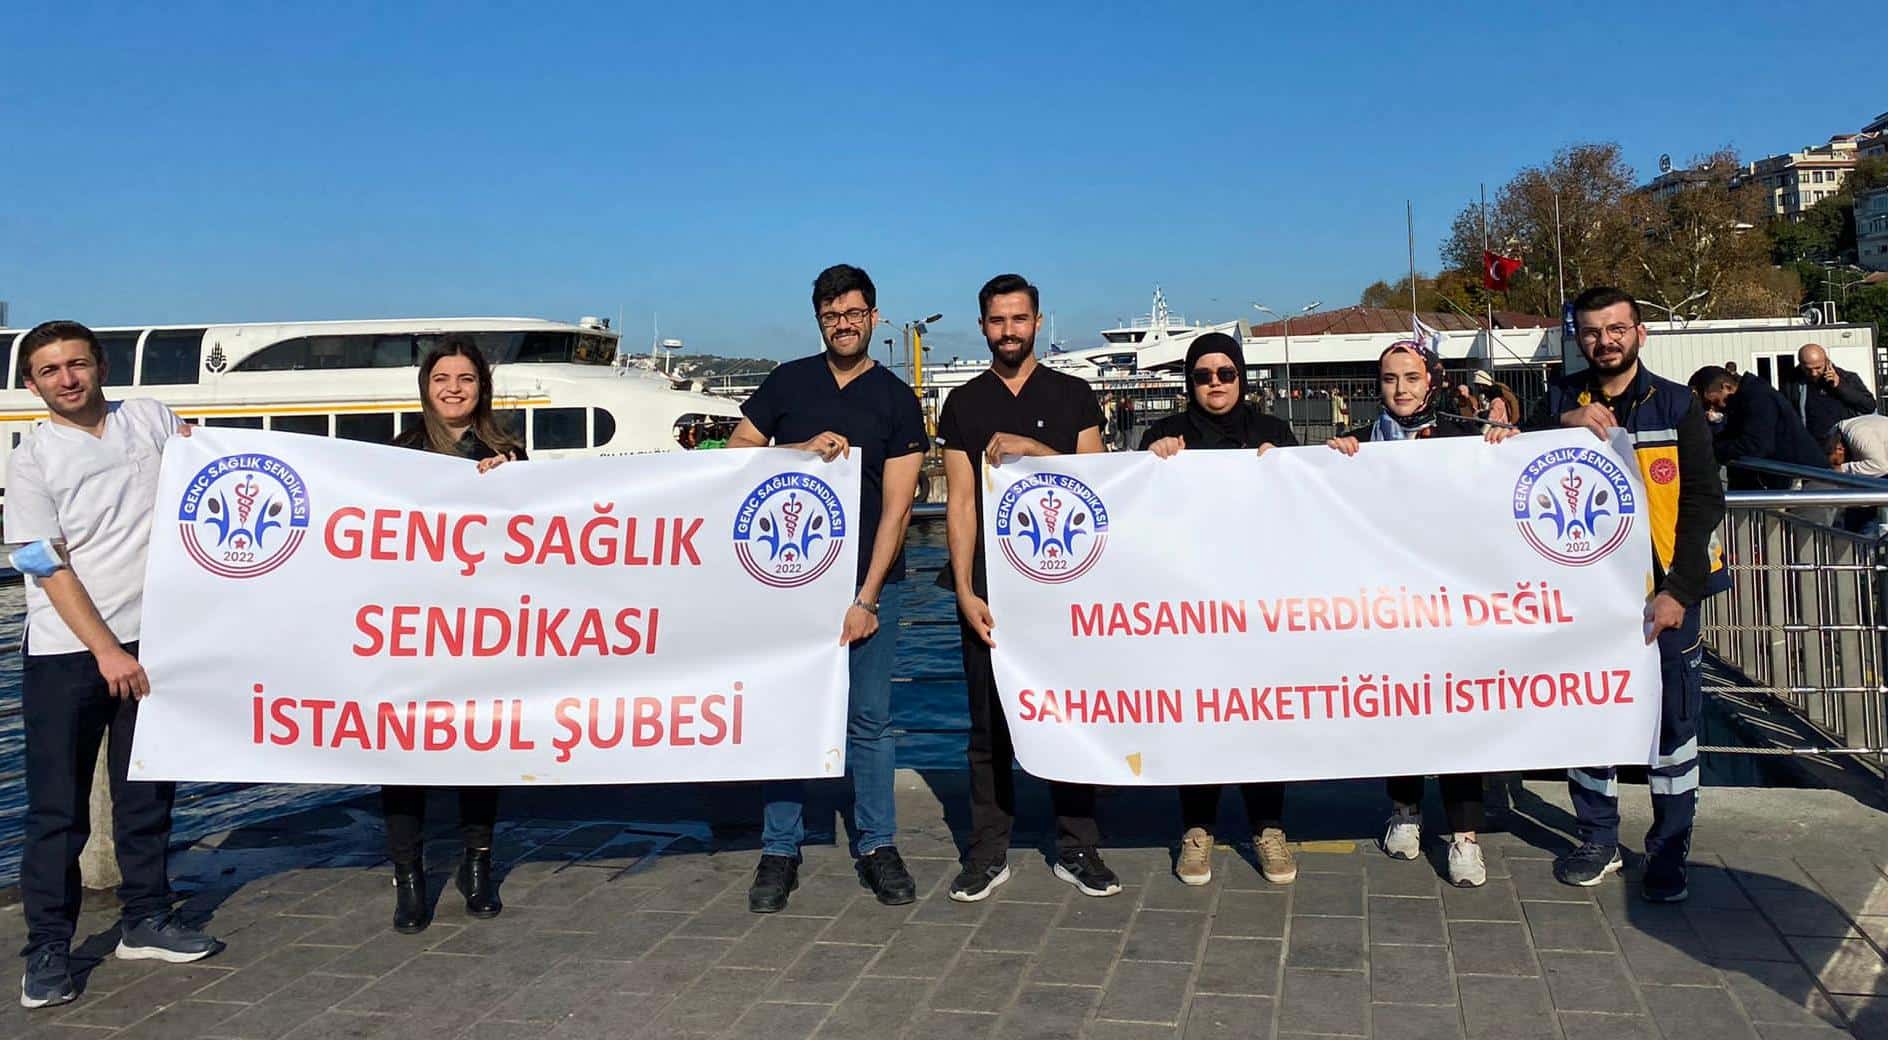 Genç Sağlık Sendikası İstanbul Şubesi: "İşimize Odaklanıp Sağlık Camiası İçin Mücadele Edeceğiz"